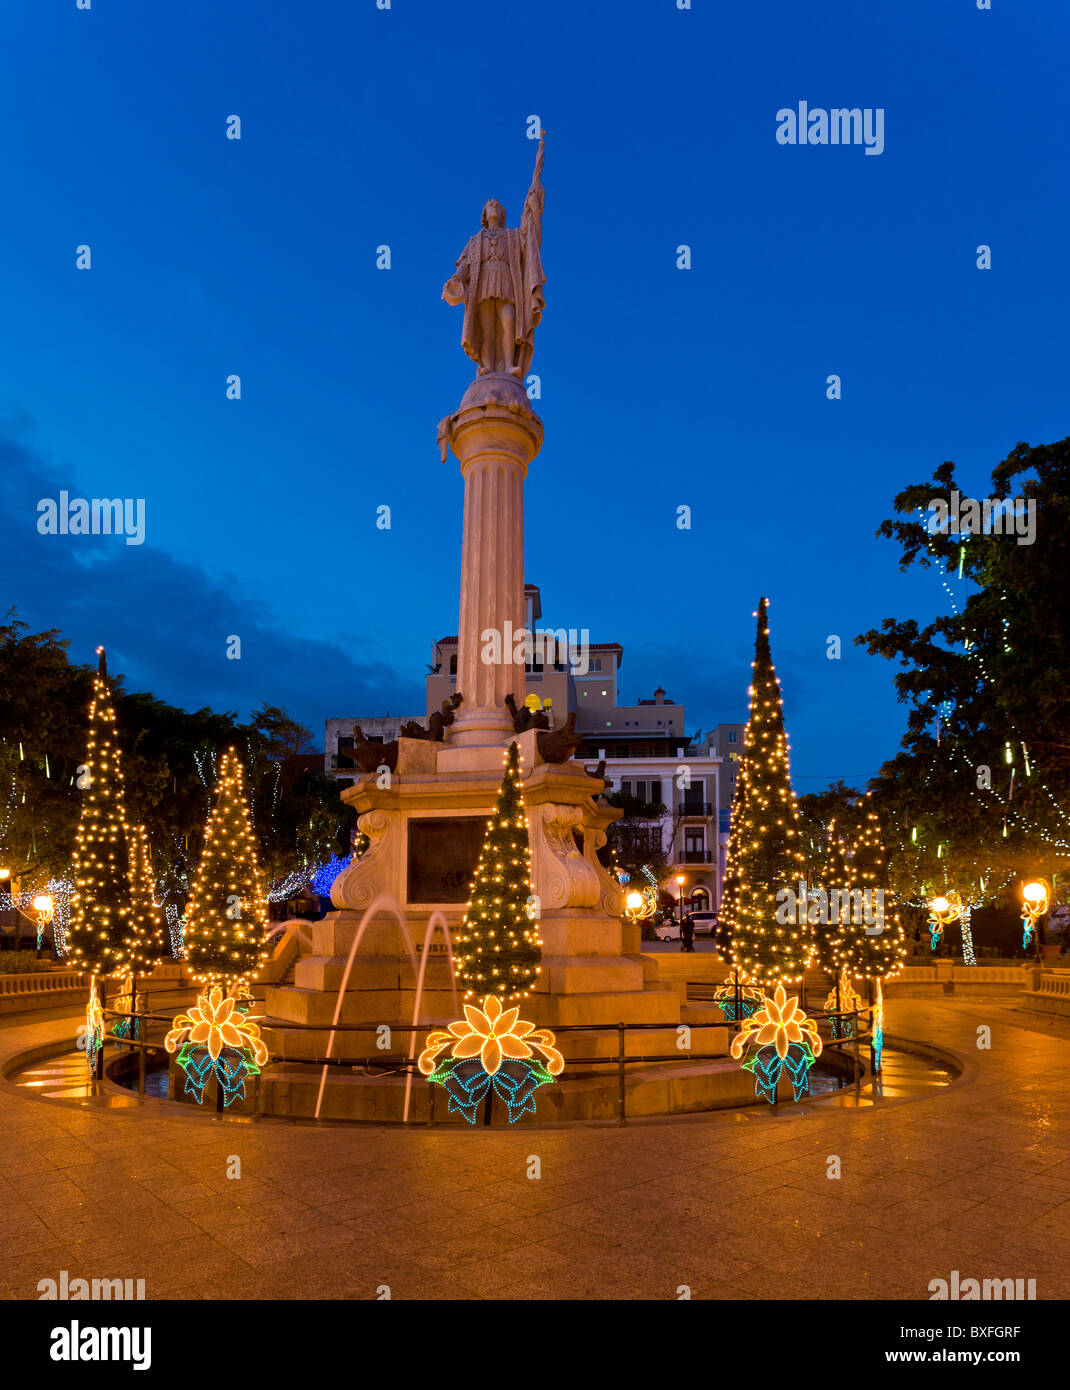 Plaza Colon dans le vieux San Juan avec statue de Cristobol Colon entouré d'arbres de Noël et illuminations Banque D'Images